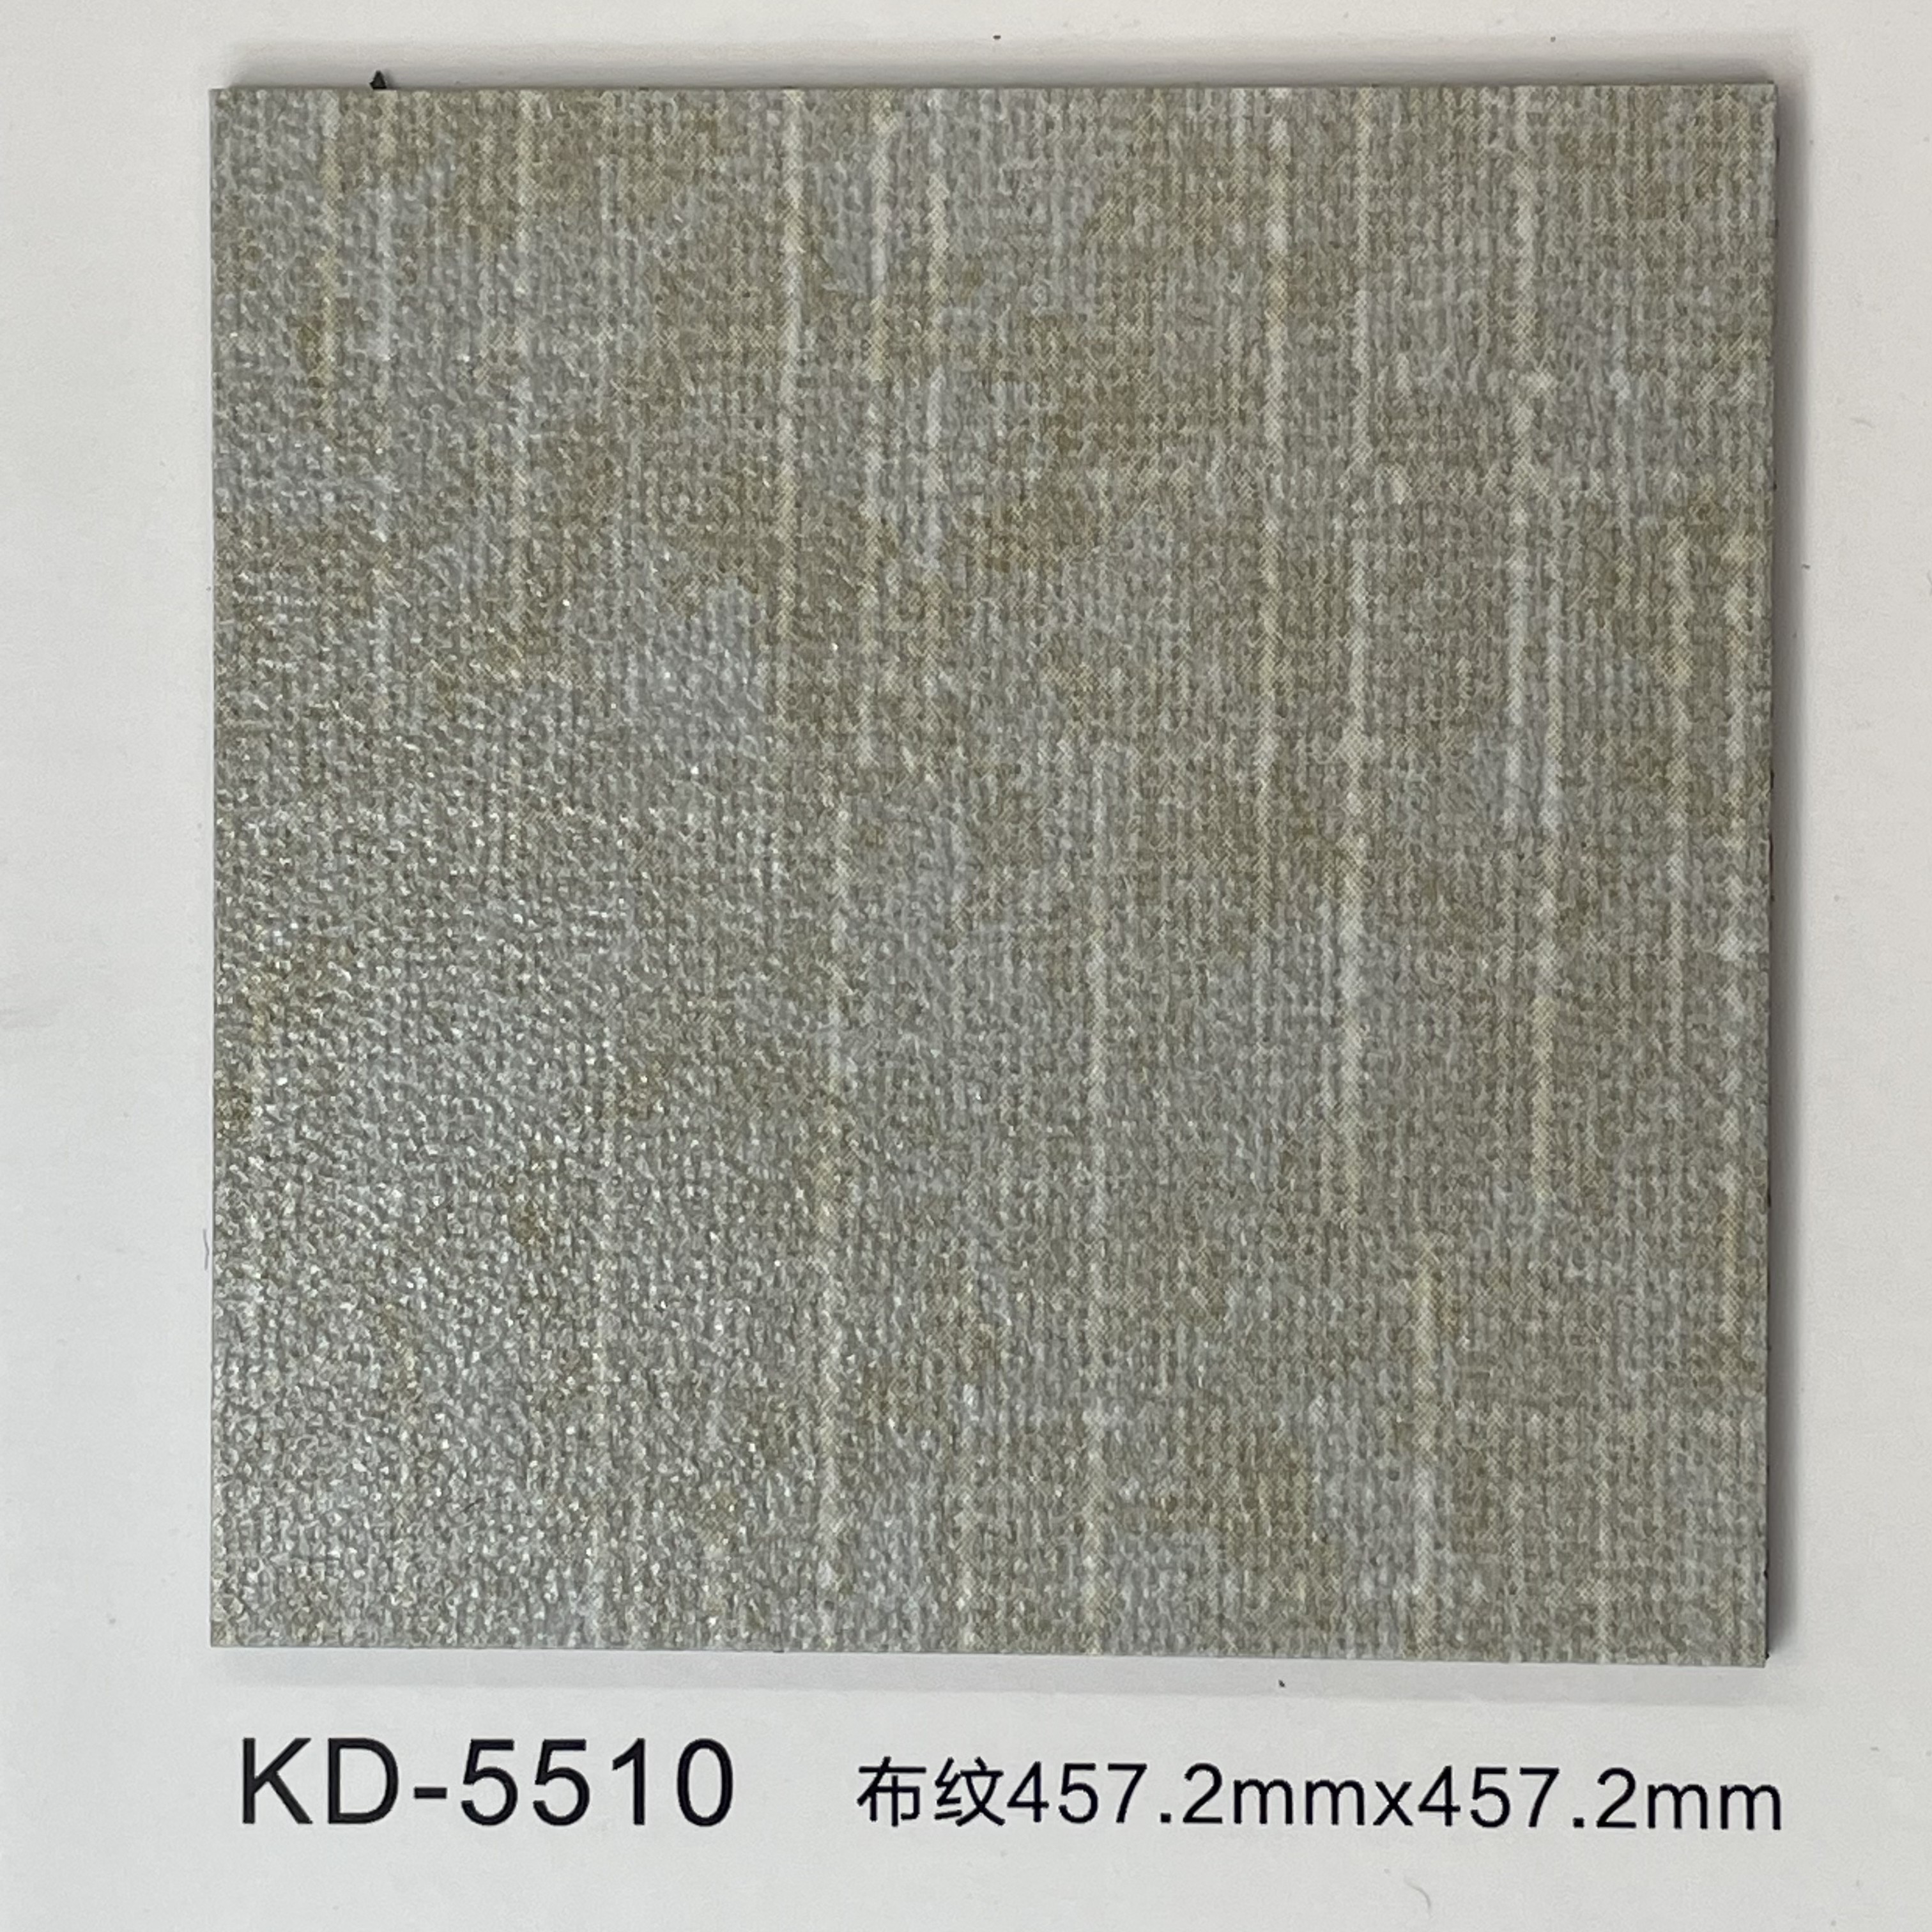 A5-KD-5510